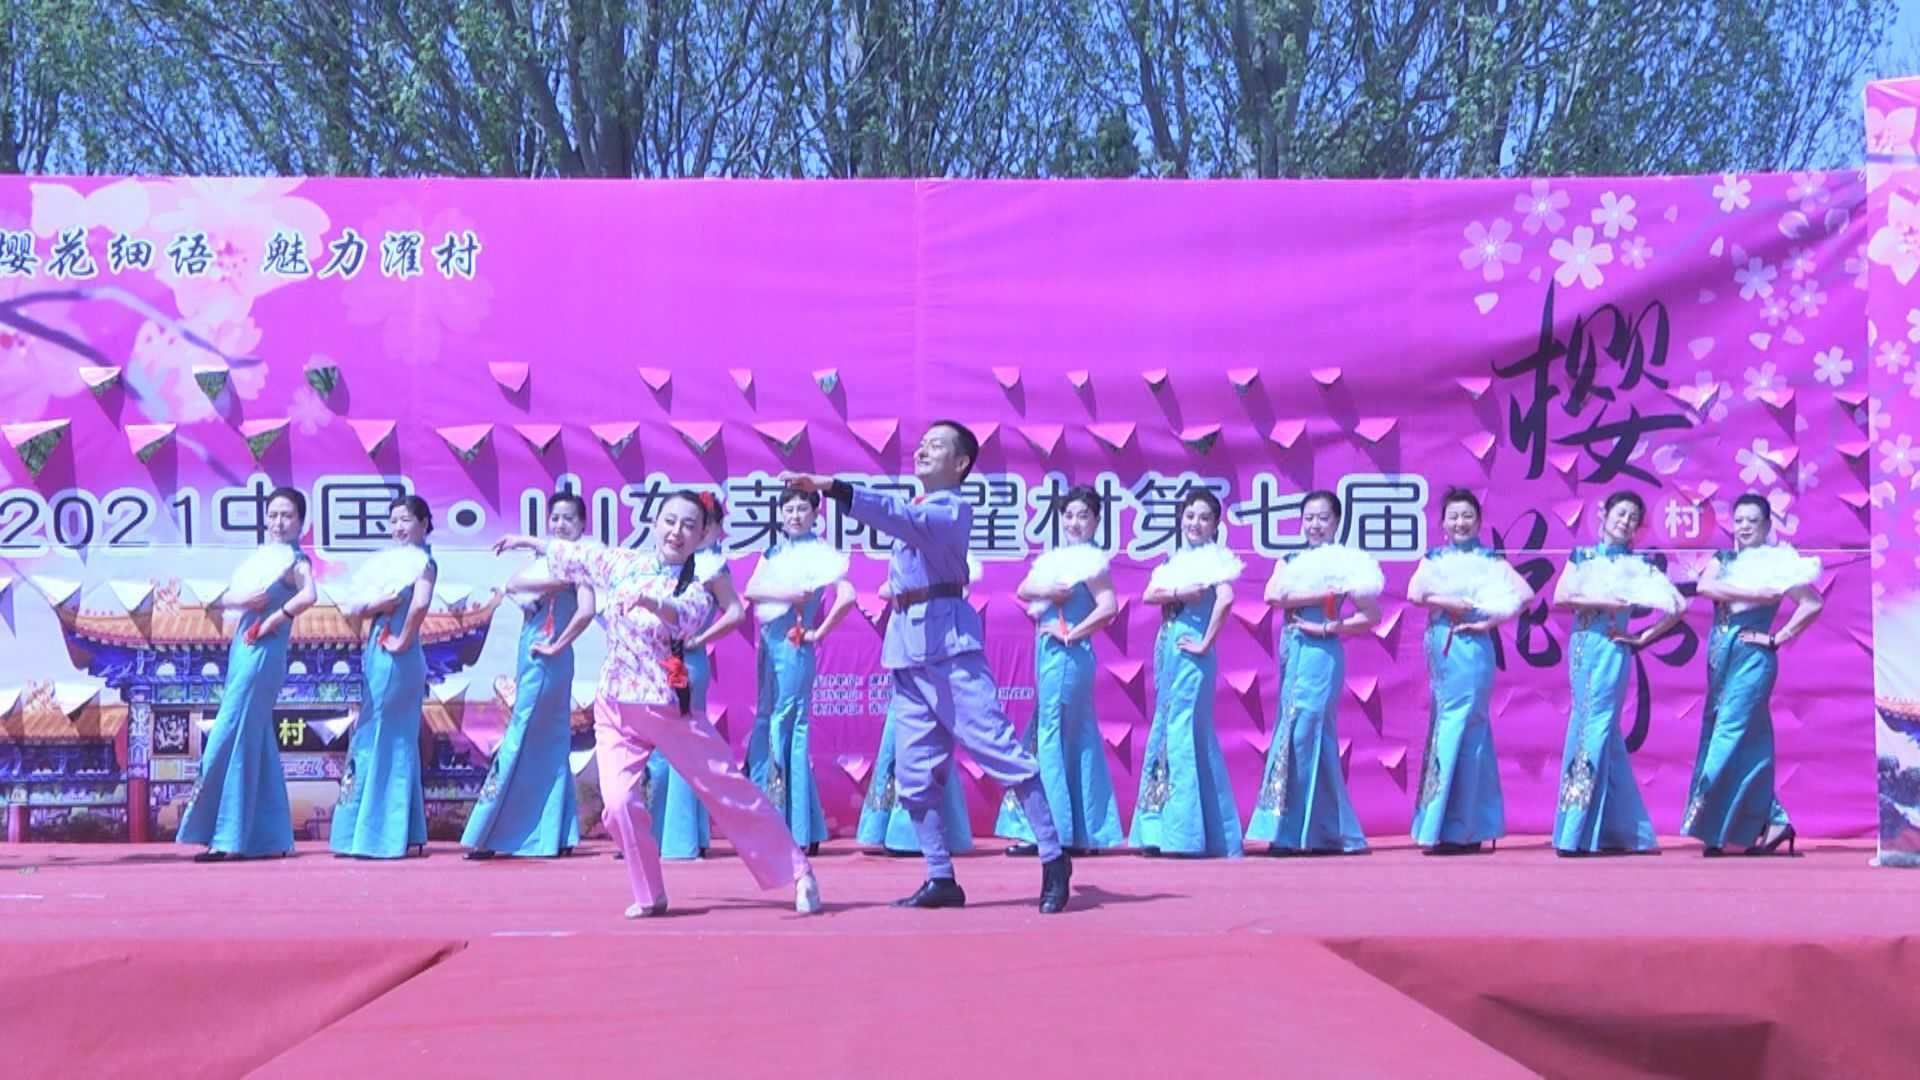 2021年第七届樱花节旗袍秀演出《桃花瑶》